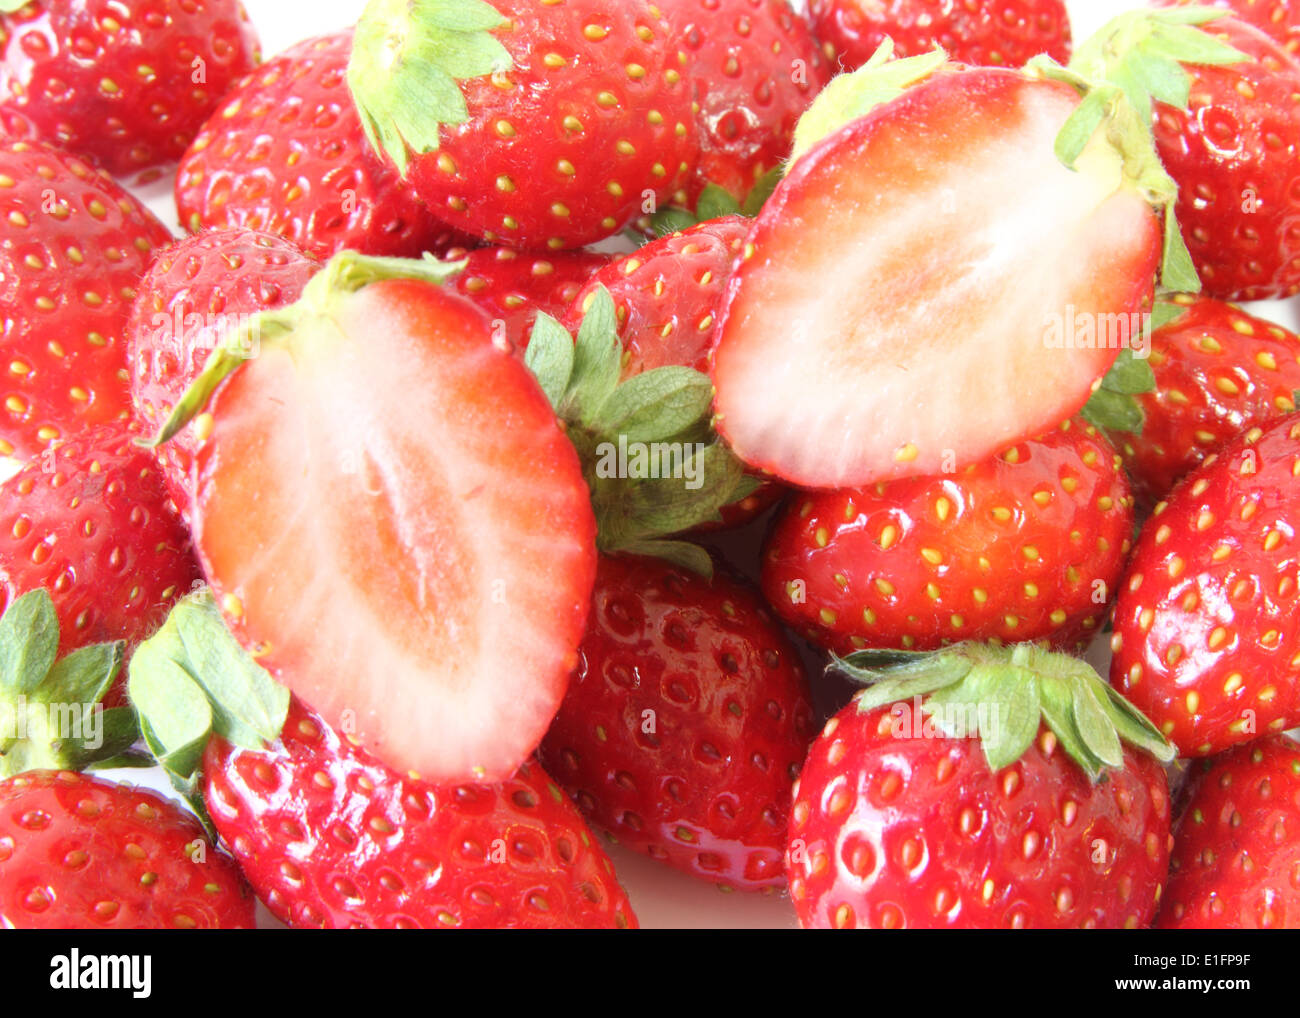 Japanese Strawberry background Stock Photo